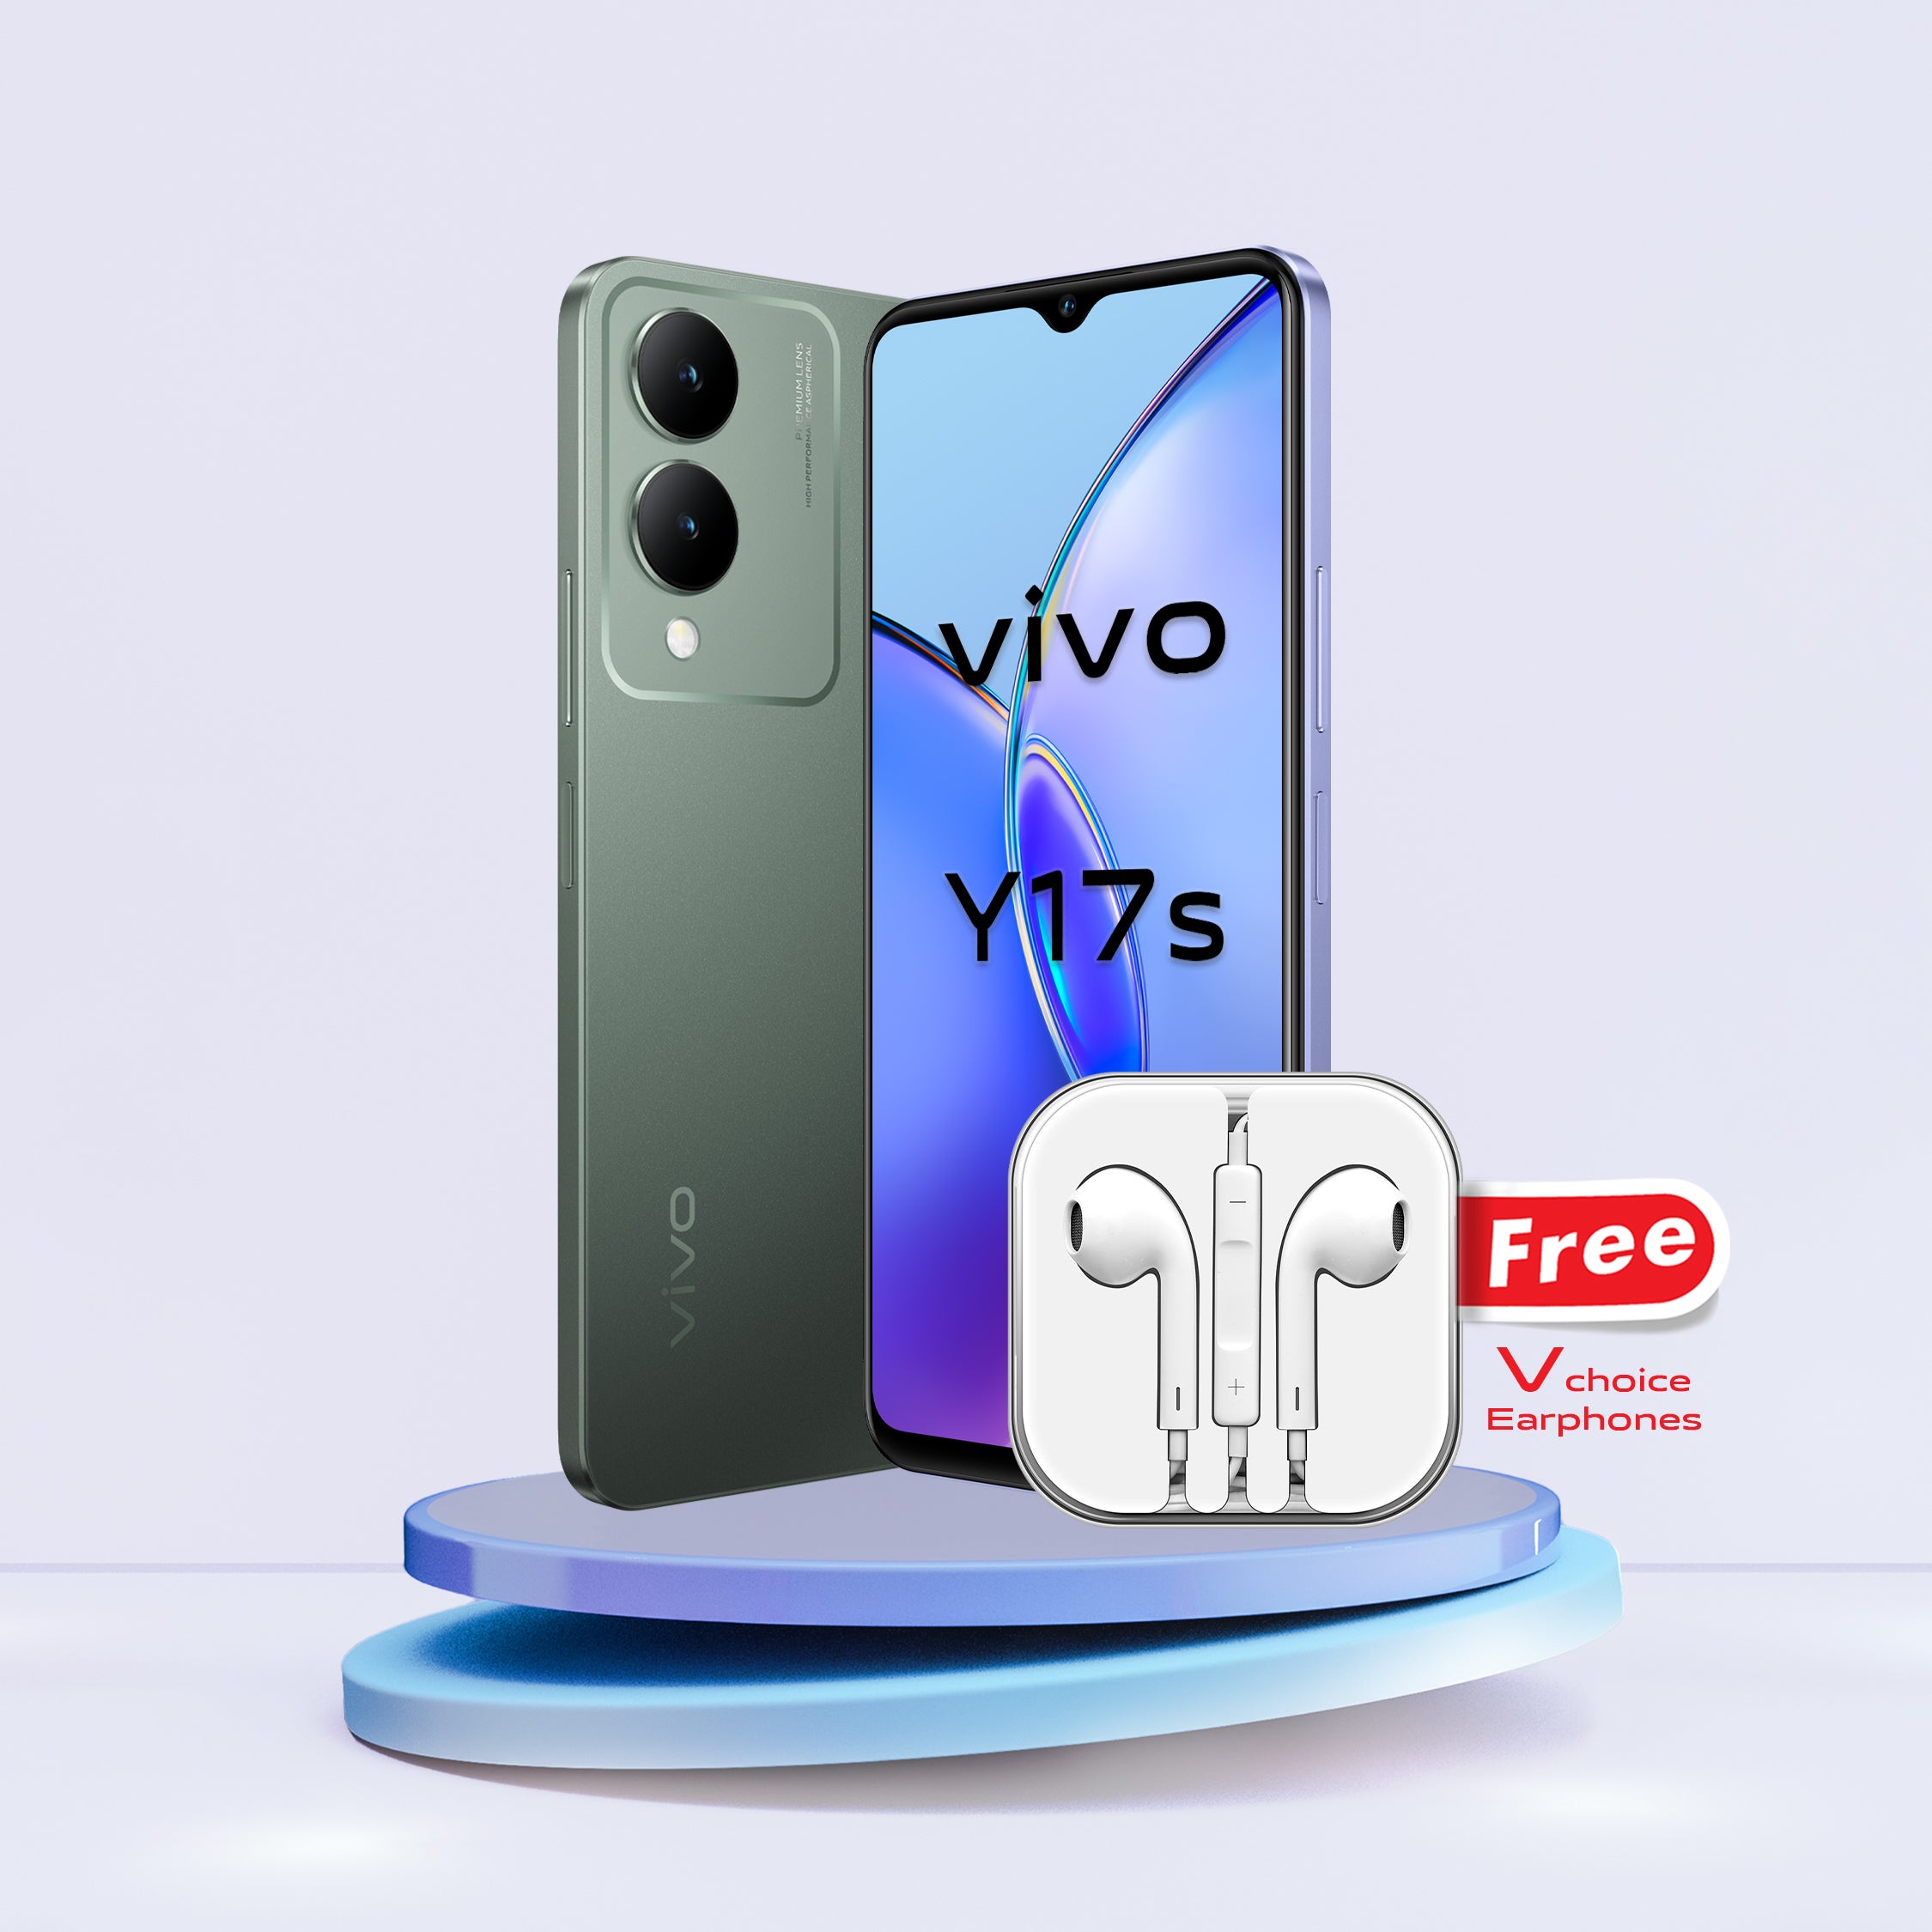 Vivo Y17s - Vivo - Smartphones & Tablets